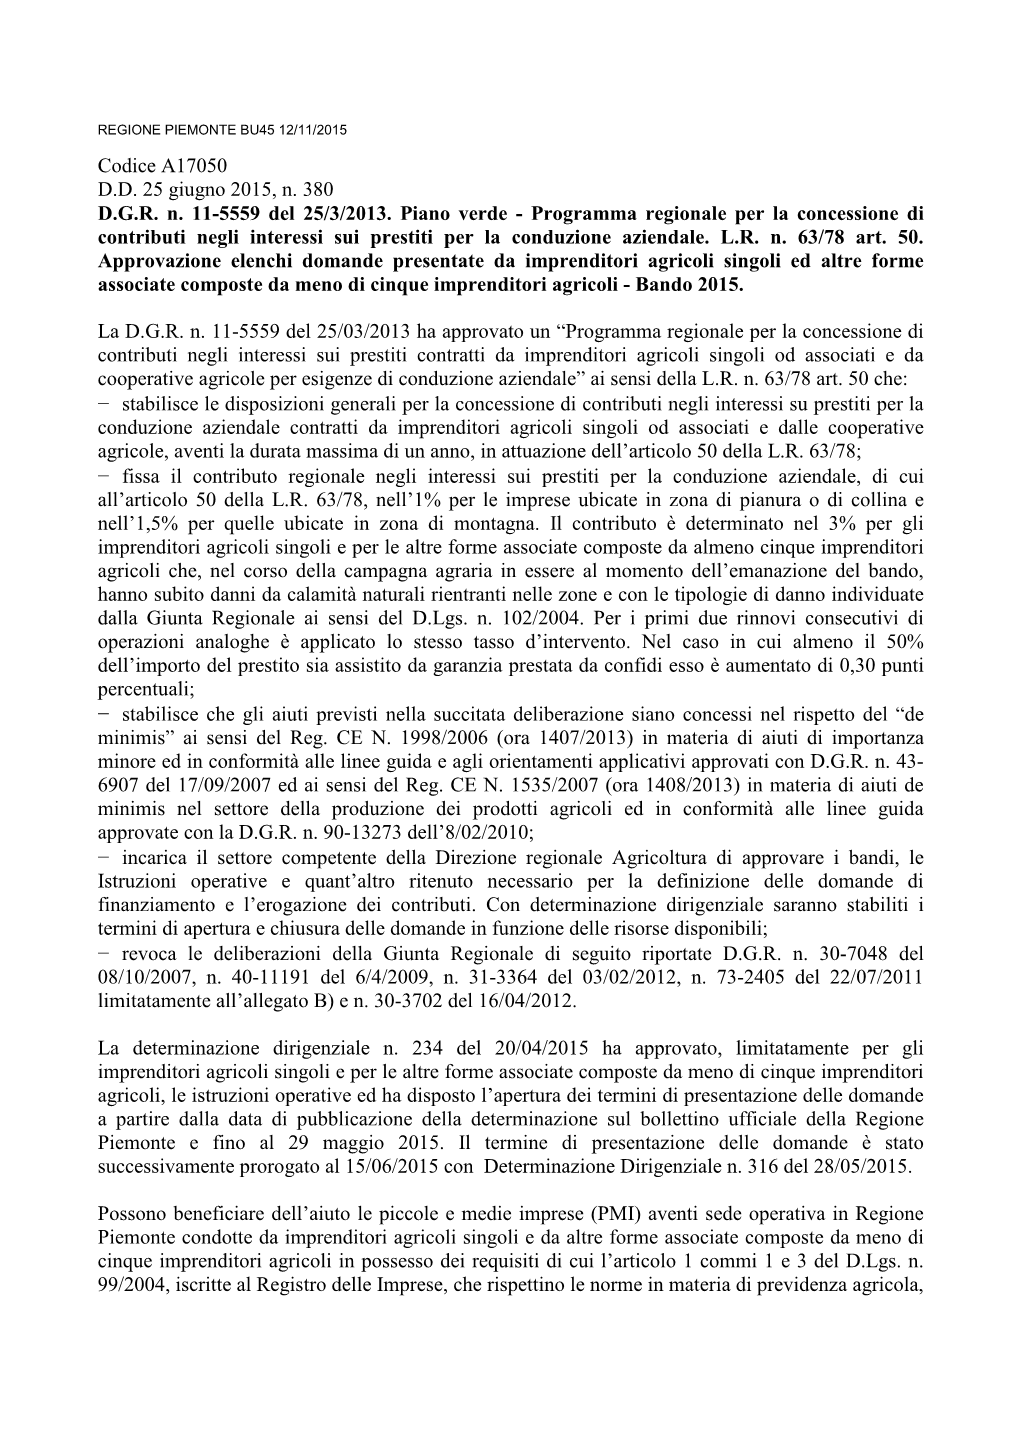 Codice A17050 D.D. 25 Giugno 2015, N. 380 D.G.R. N. 11-5559 Del 25/3/2013. Piano Verde